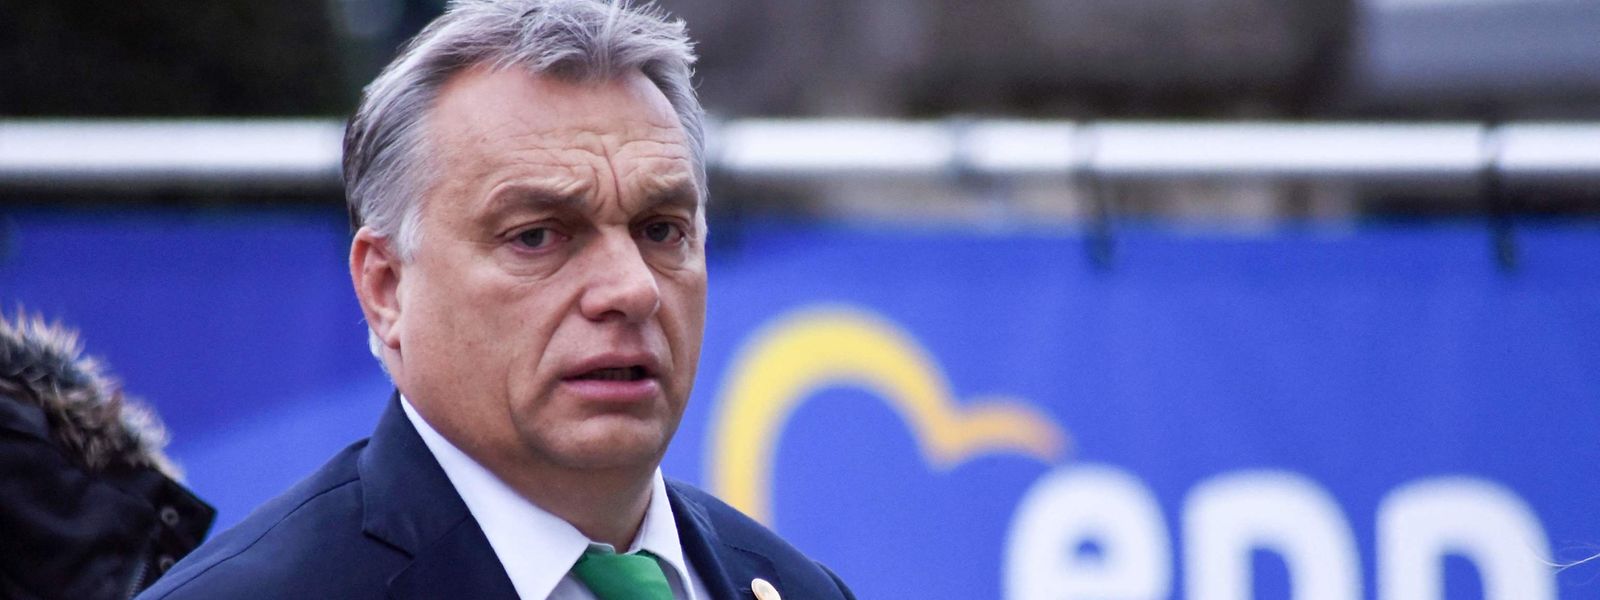 Der rechtsnationale Orban steht wegen seines Plans einer „illiberalen“ Demokratie in der Kritik. Unter anderem geht es um seine Flüchtlings-, Medien-, Hochschul- und Justizpolitik.  